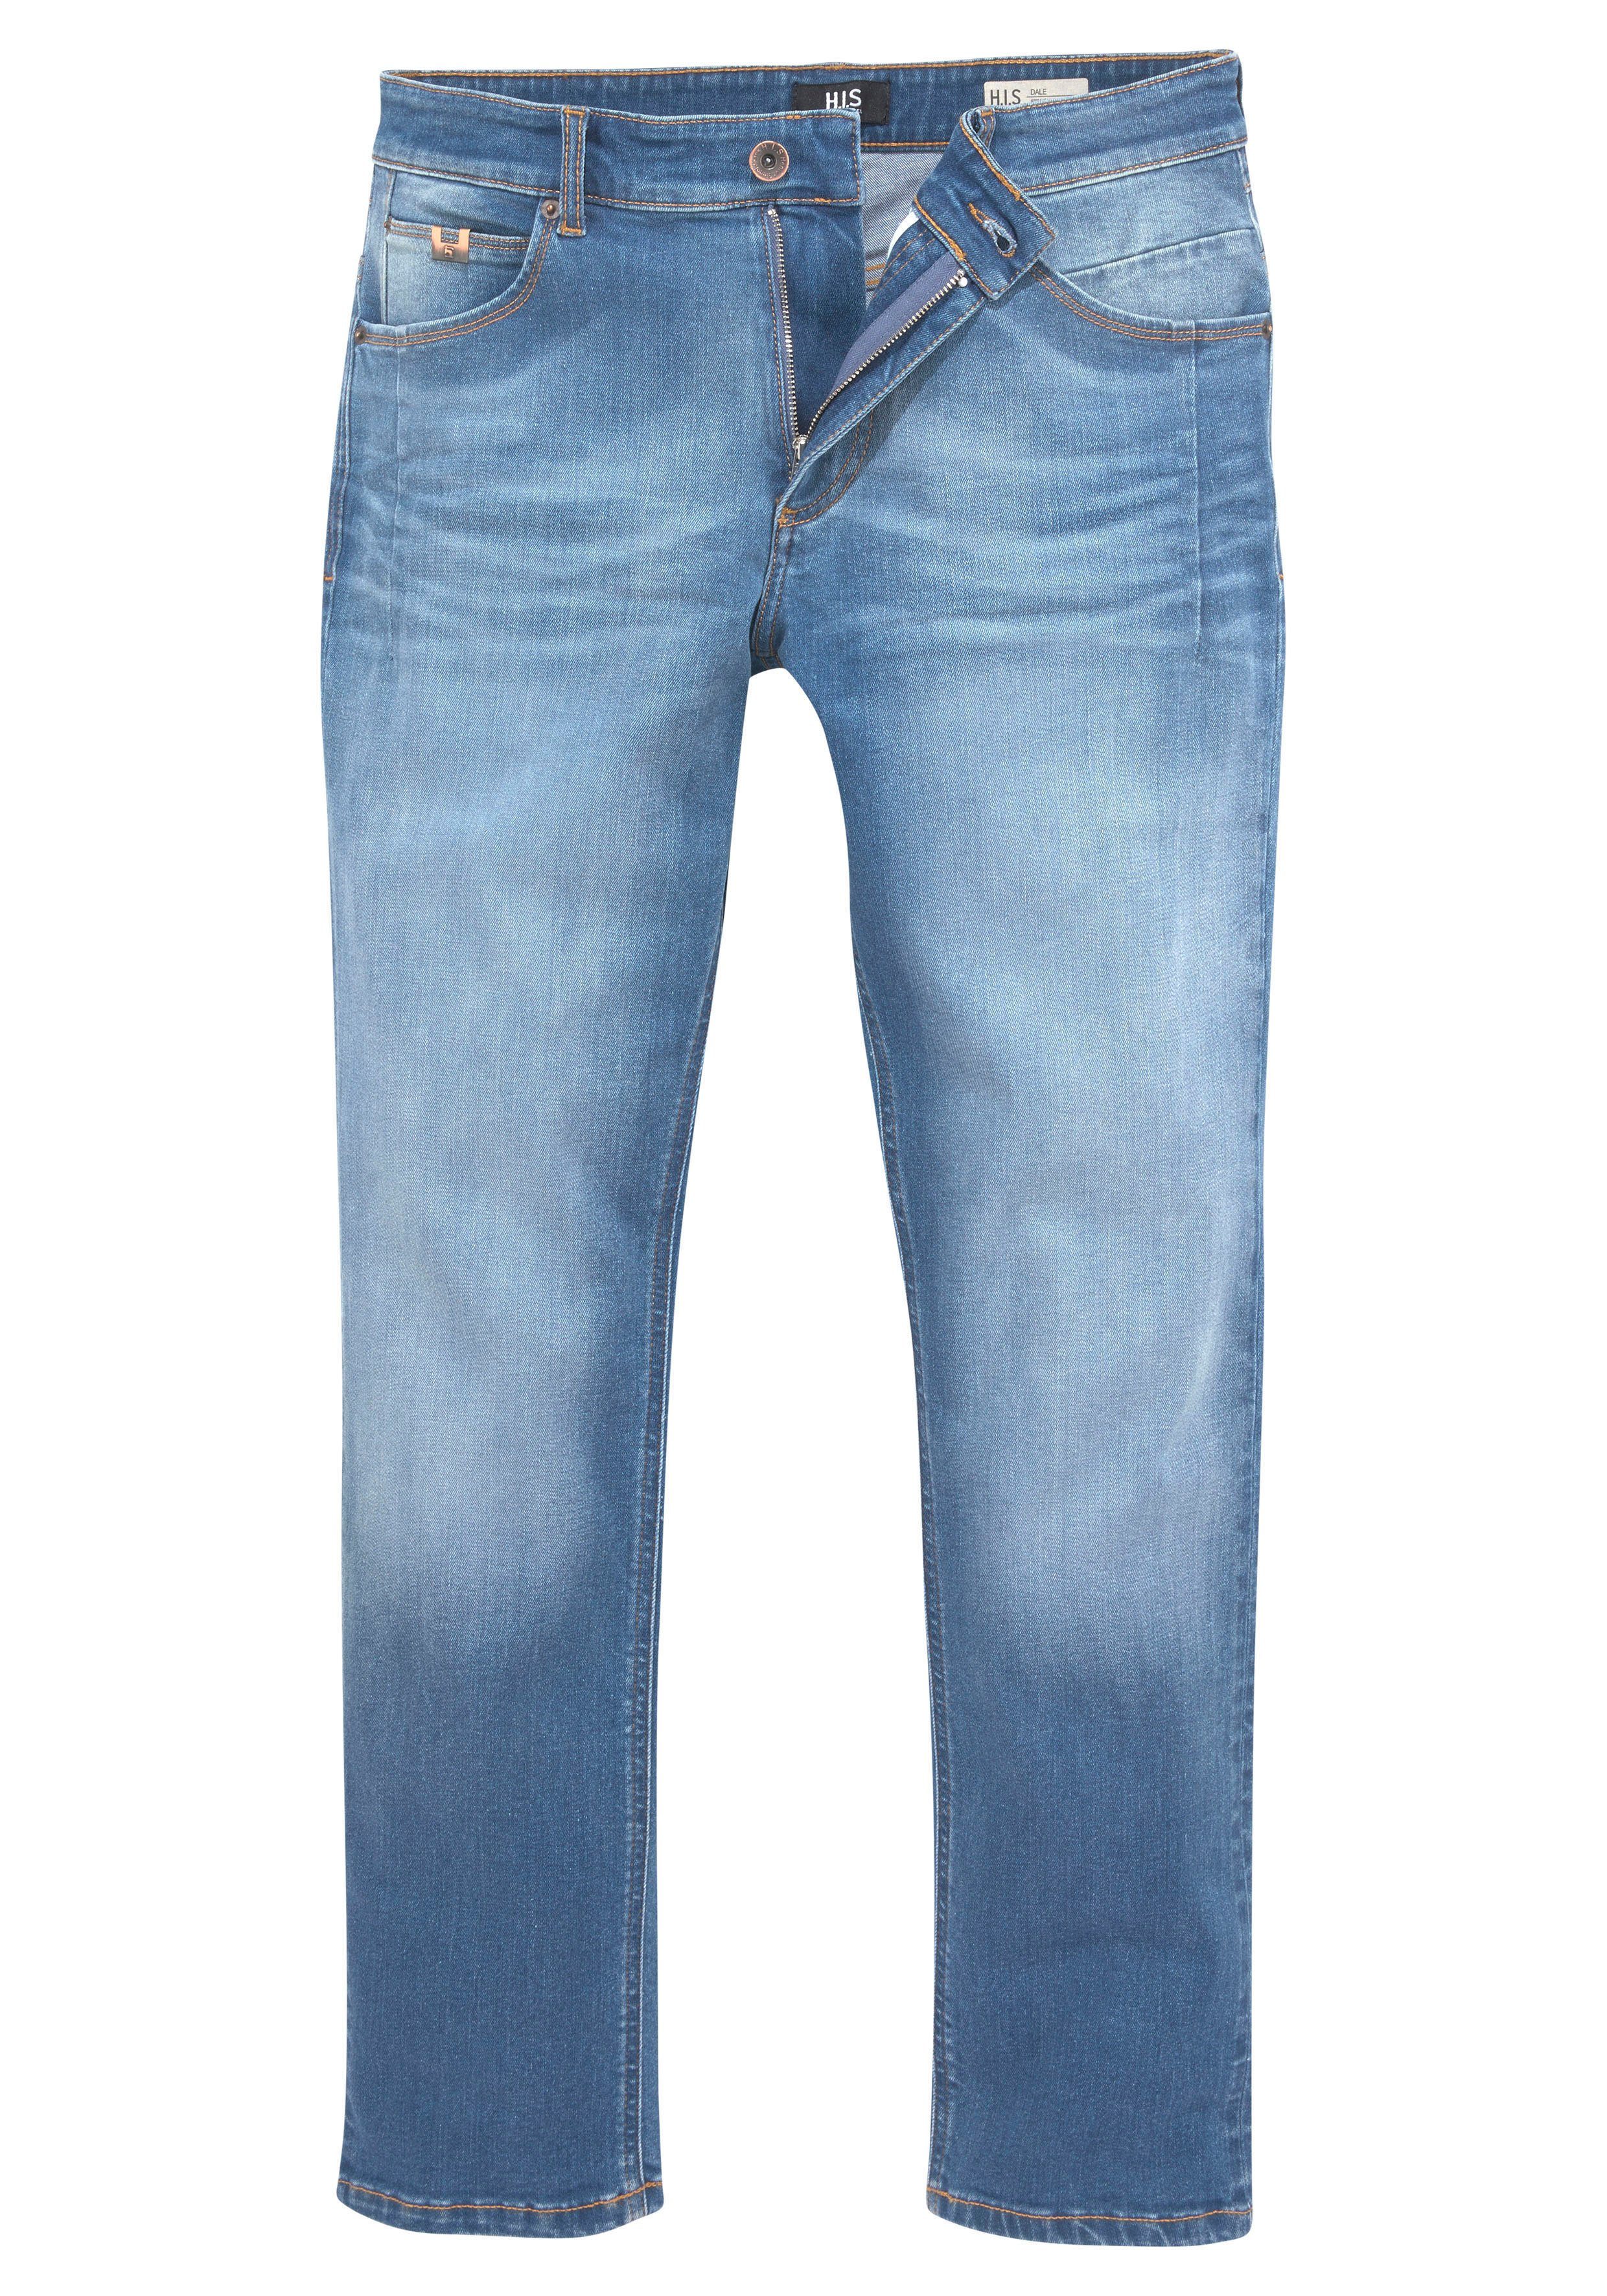 durch blue Wash Straight-Jeans Ozon wassersparende DALE H.I.S Ökologische, Produktion